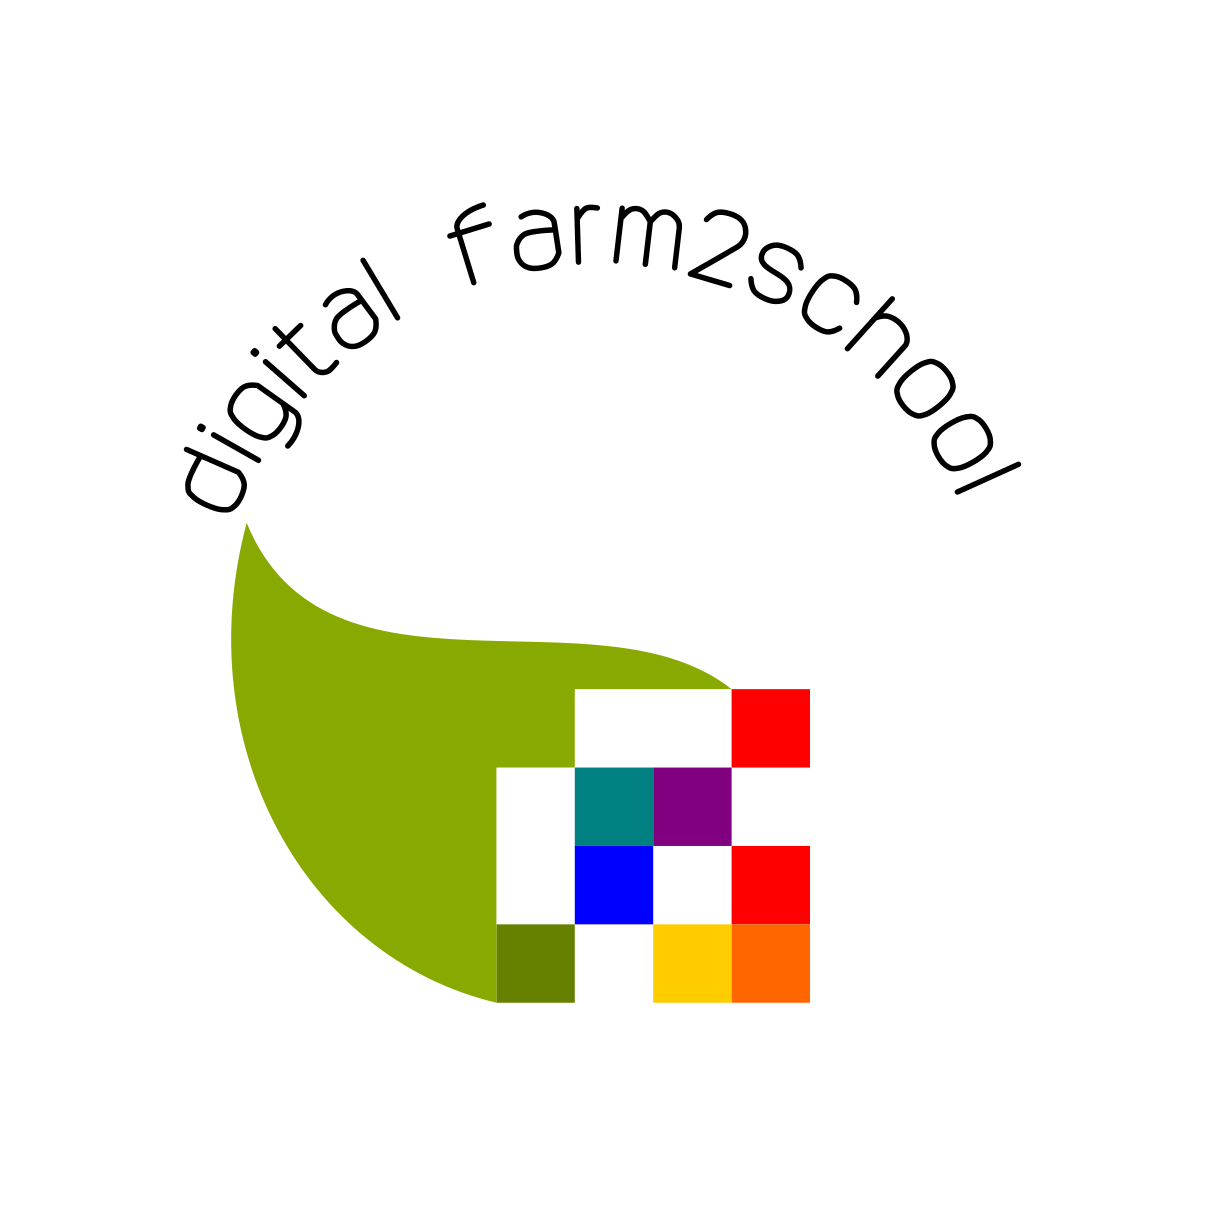 Digital Farm 2 School